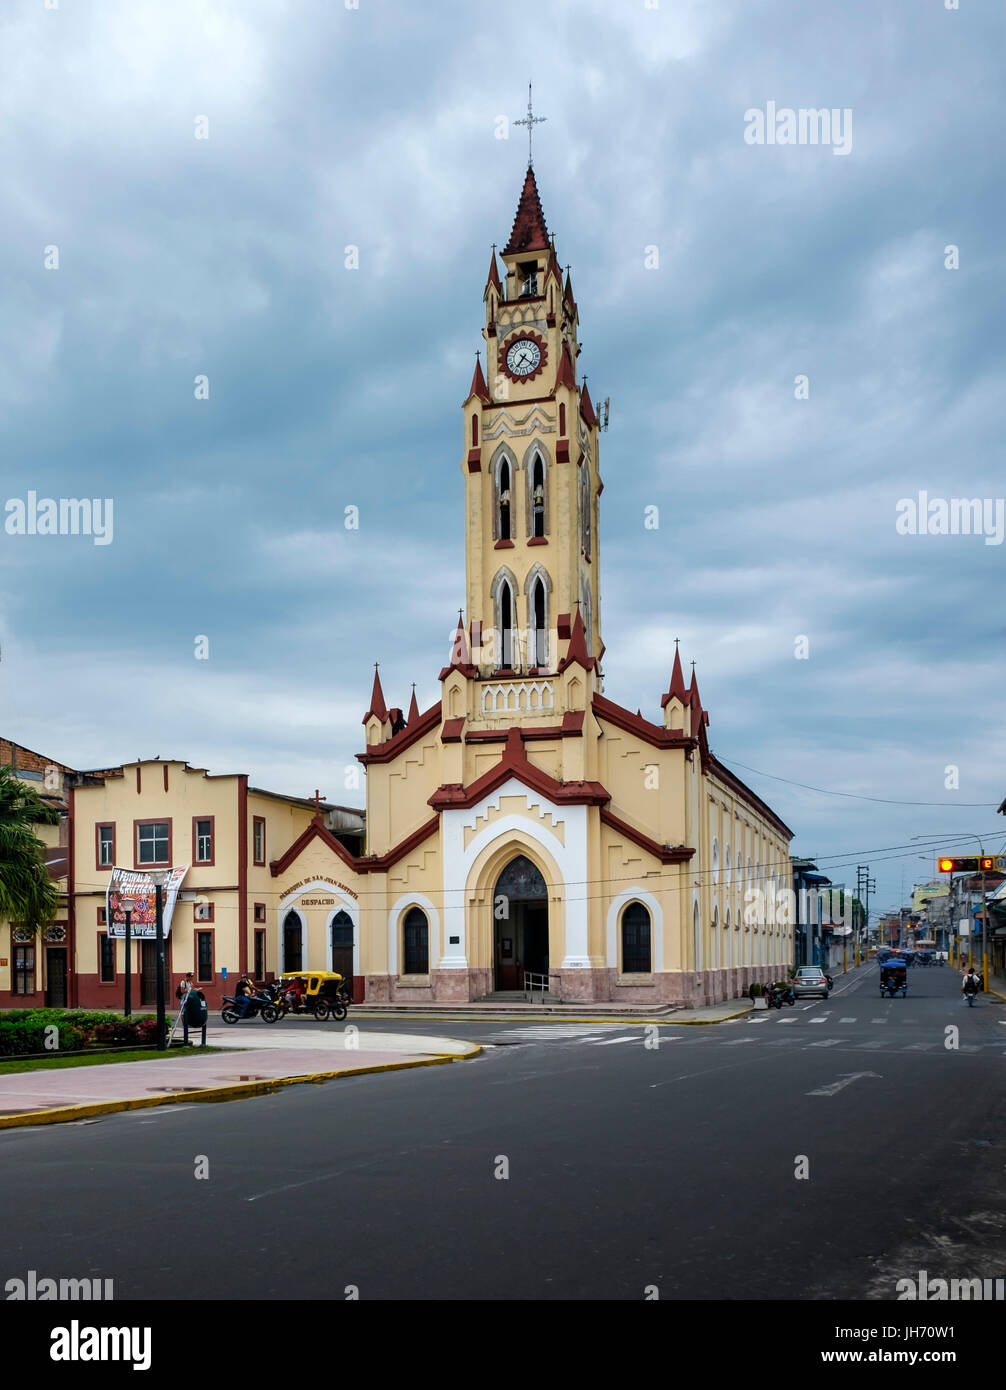 IQUITOS, Perù - circa ottobre 2015: Chiesa di San Giovanni Battista a Iquitos, una città nell'Amazzonia peruviana. Foto Stock